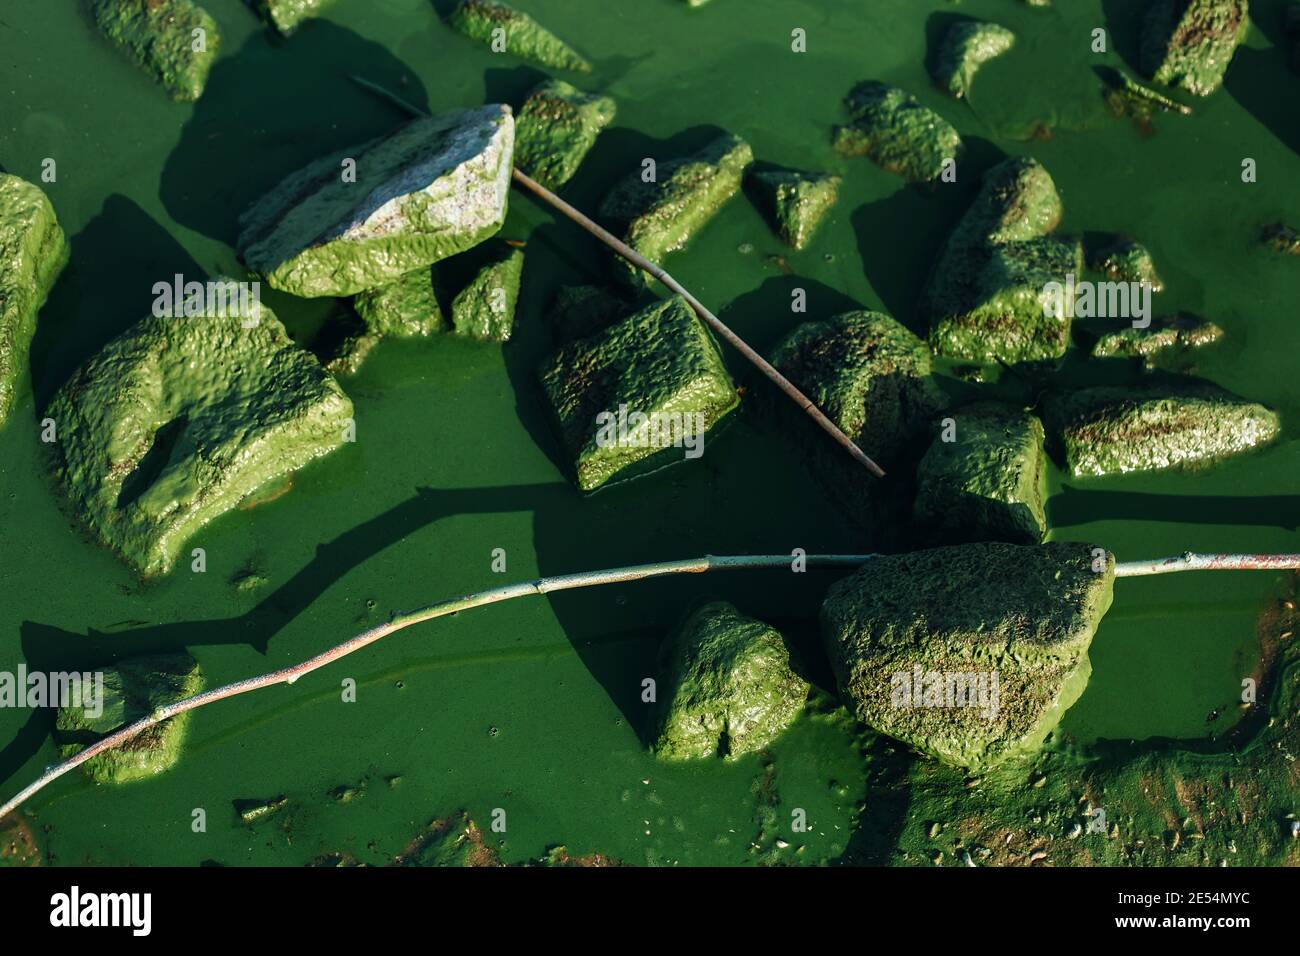 Sfondo naturale a contrasto con pietre coperte da fioriture nocive di alghe in acque verdi poco profonde del fiume, concetto ambientale Foto Stock